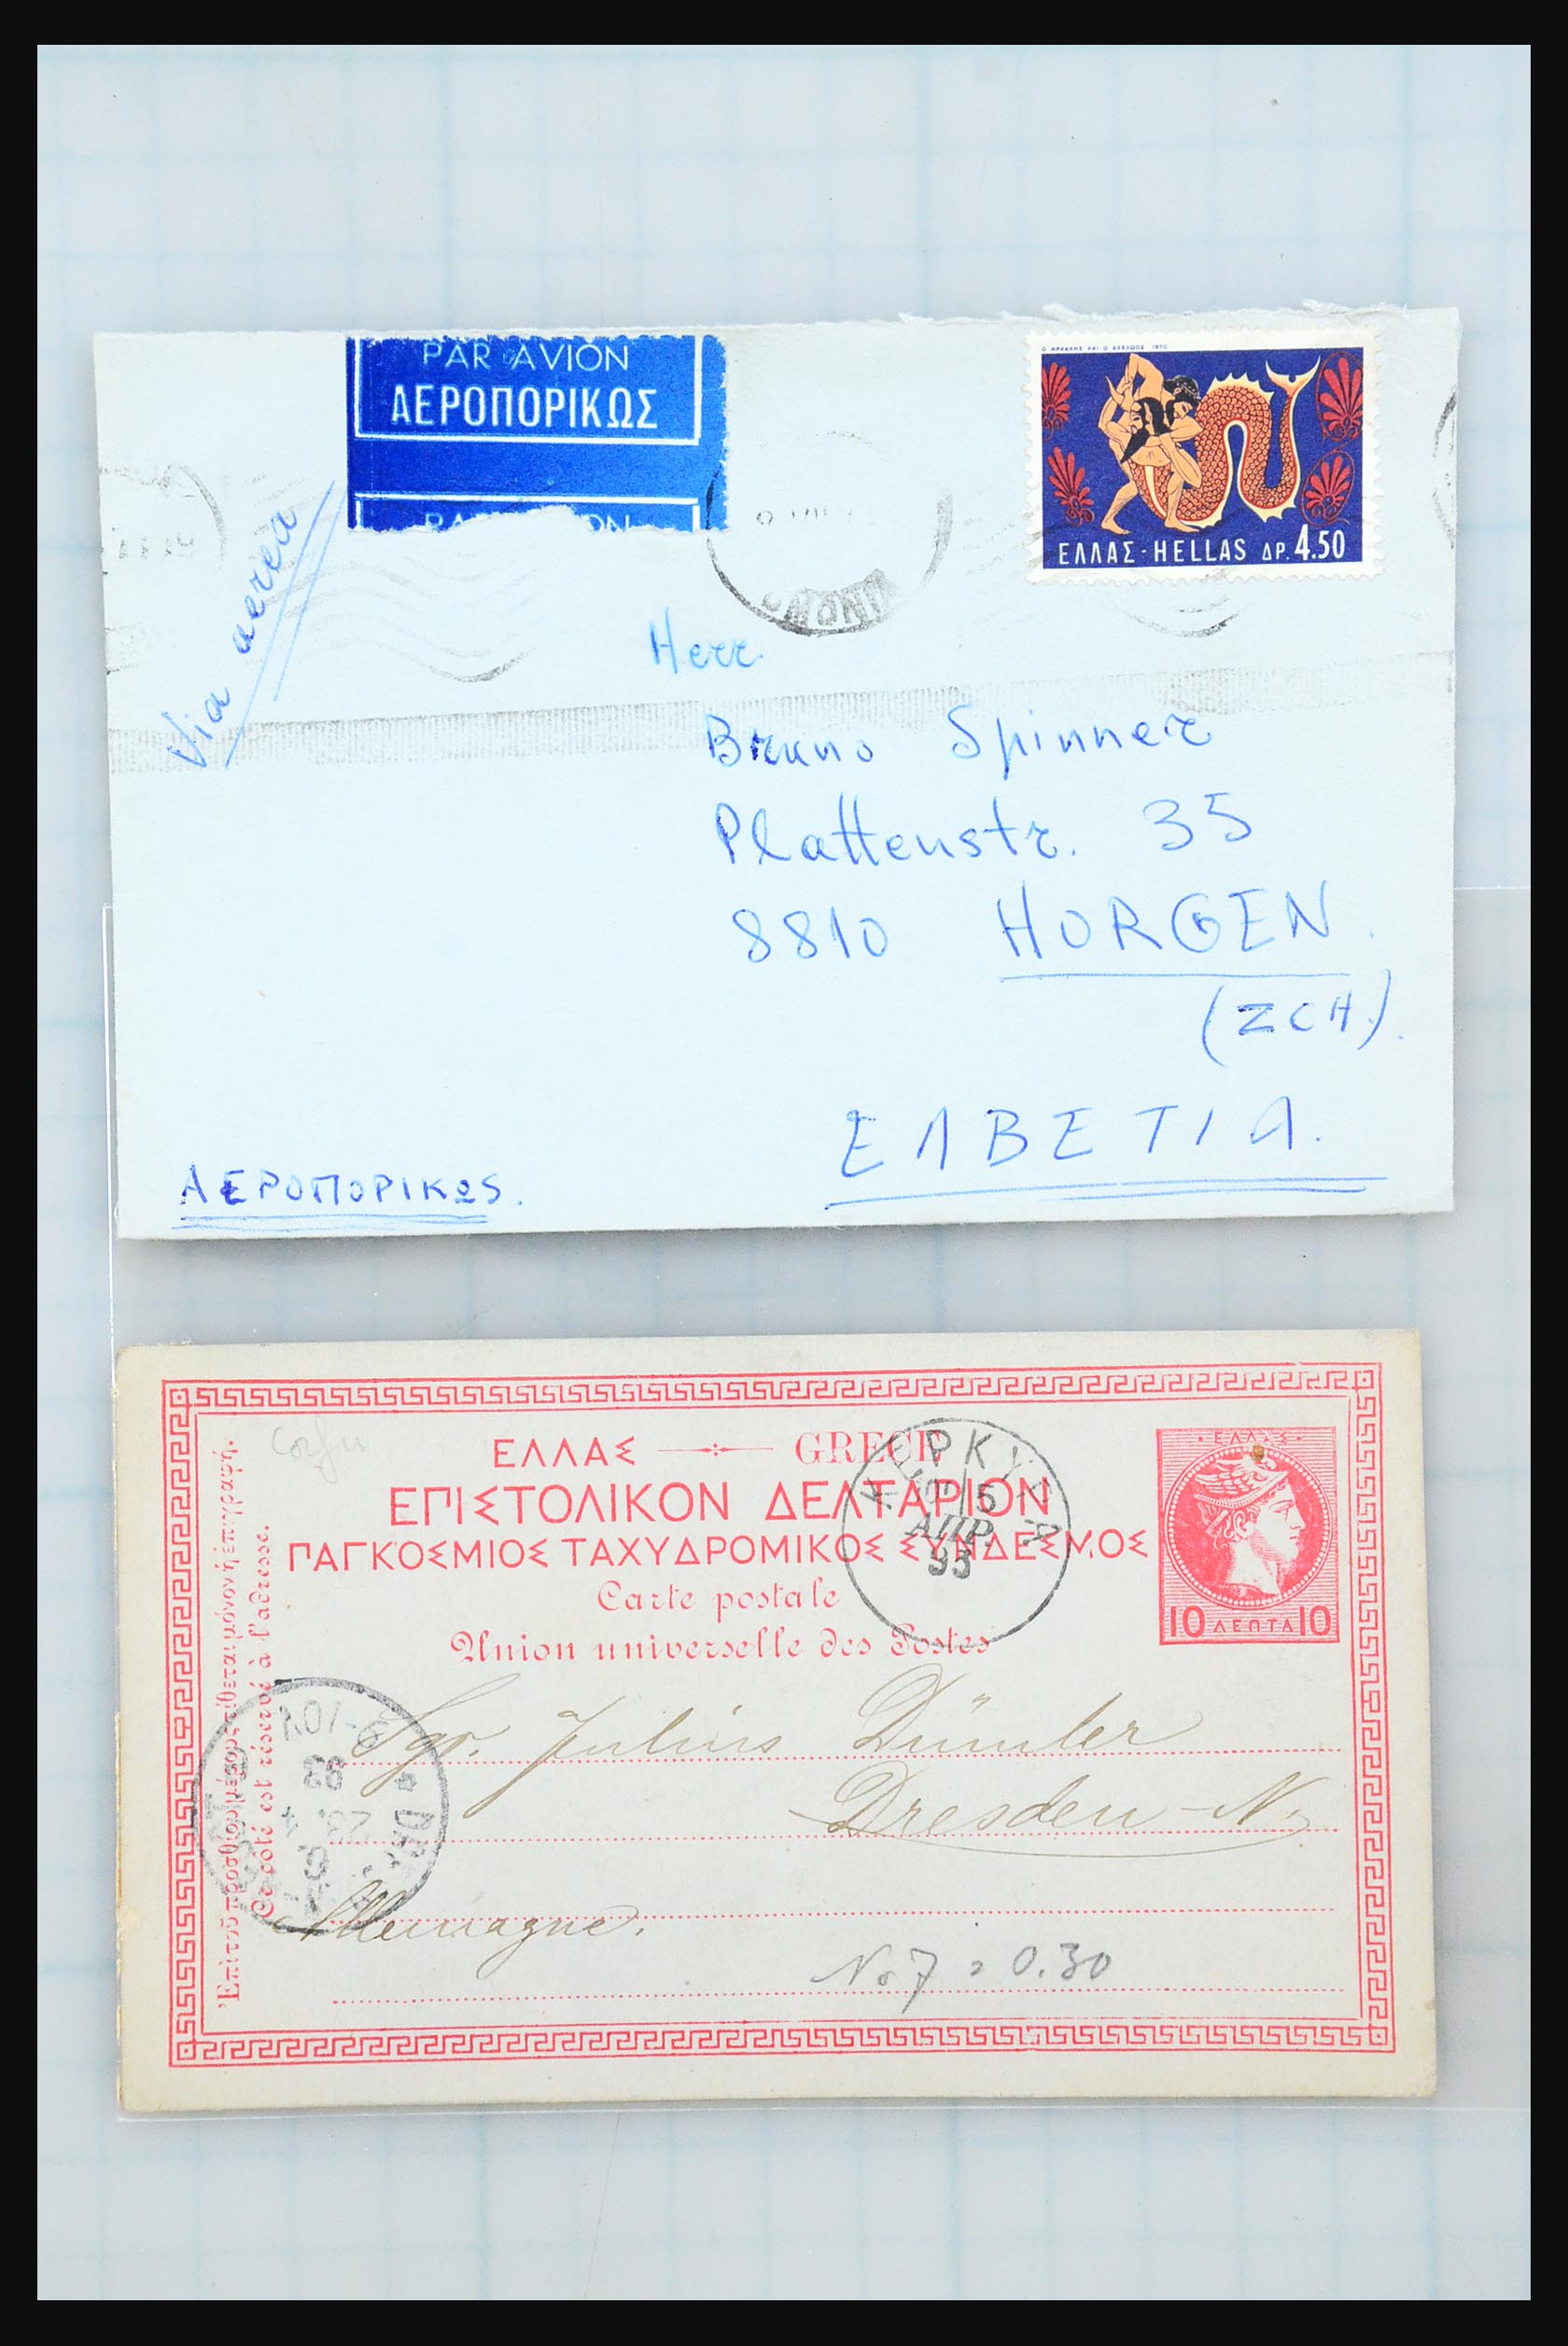 31358 111 - 31358 Portugal/Luxemburg/Griekenland brieven 1880-1960.